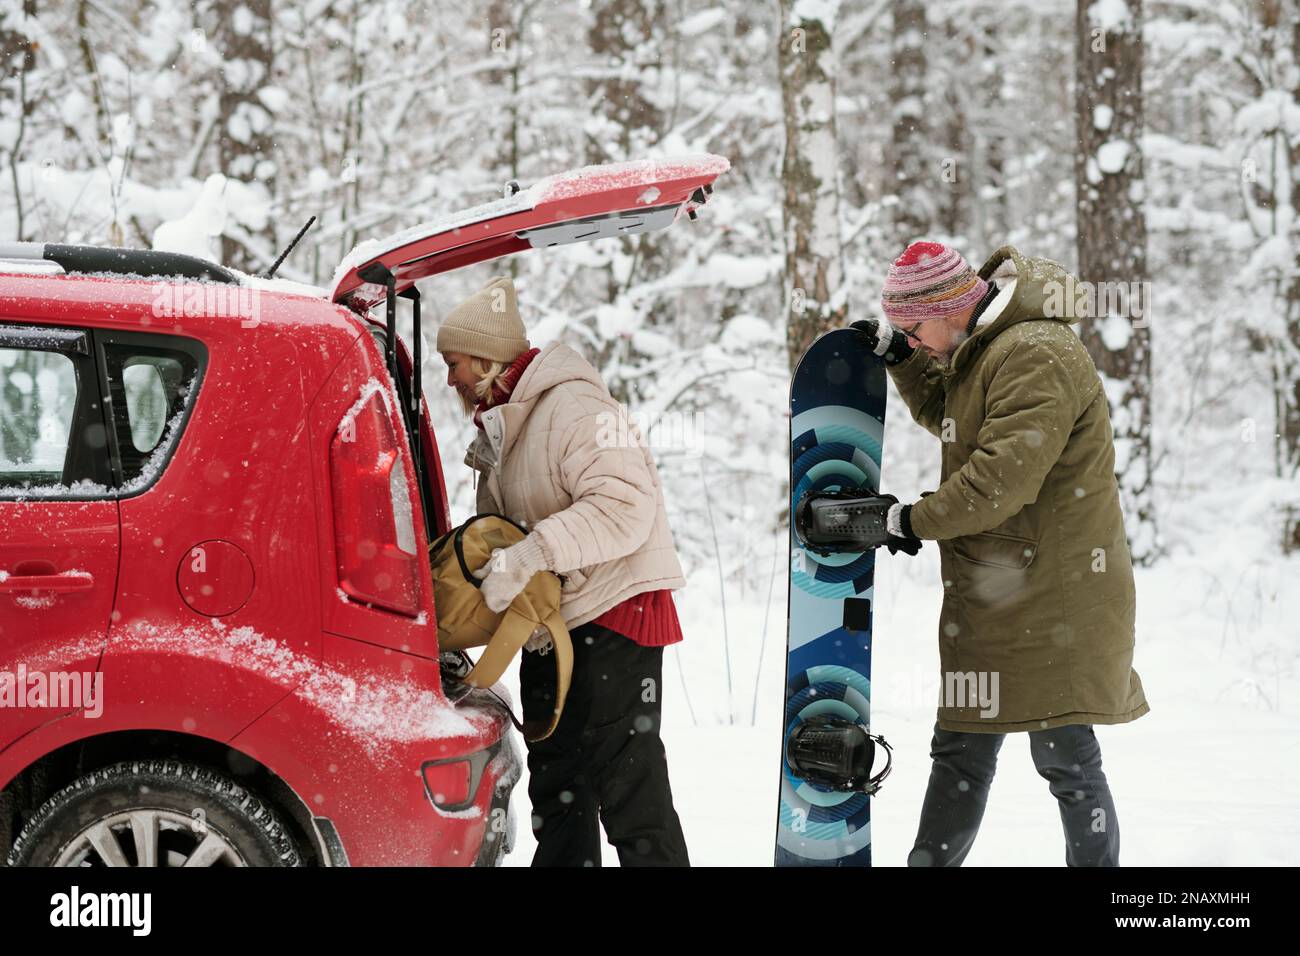 Seitenansicht eines aktiven erwachsenen Ehepaars in Winterbekleidung, das sein Gepäck aus dem Kofferraum des Fließhecks nimmt, während ein älterer Mann auf das Snowboard schaut Stockfoto